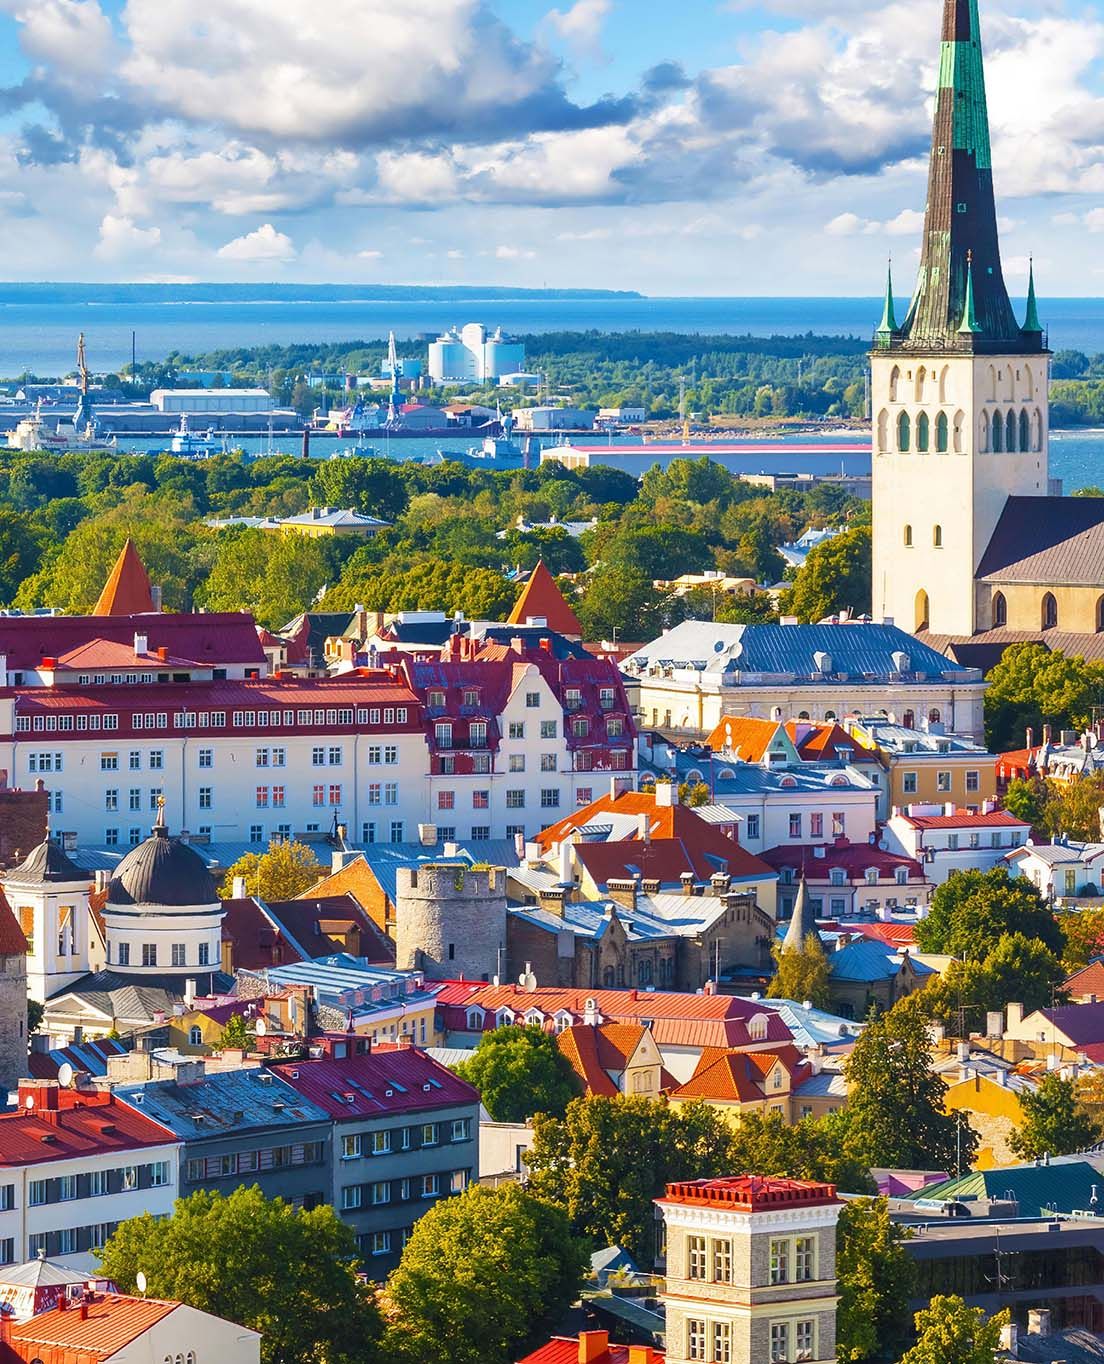 Estonia at a glance